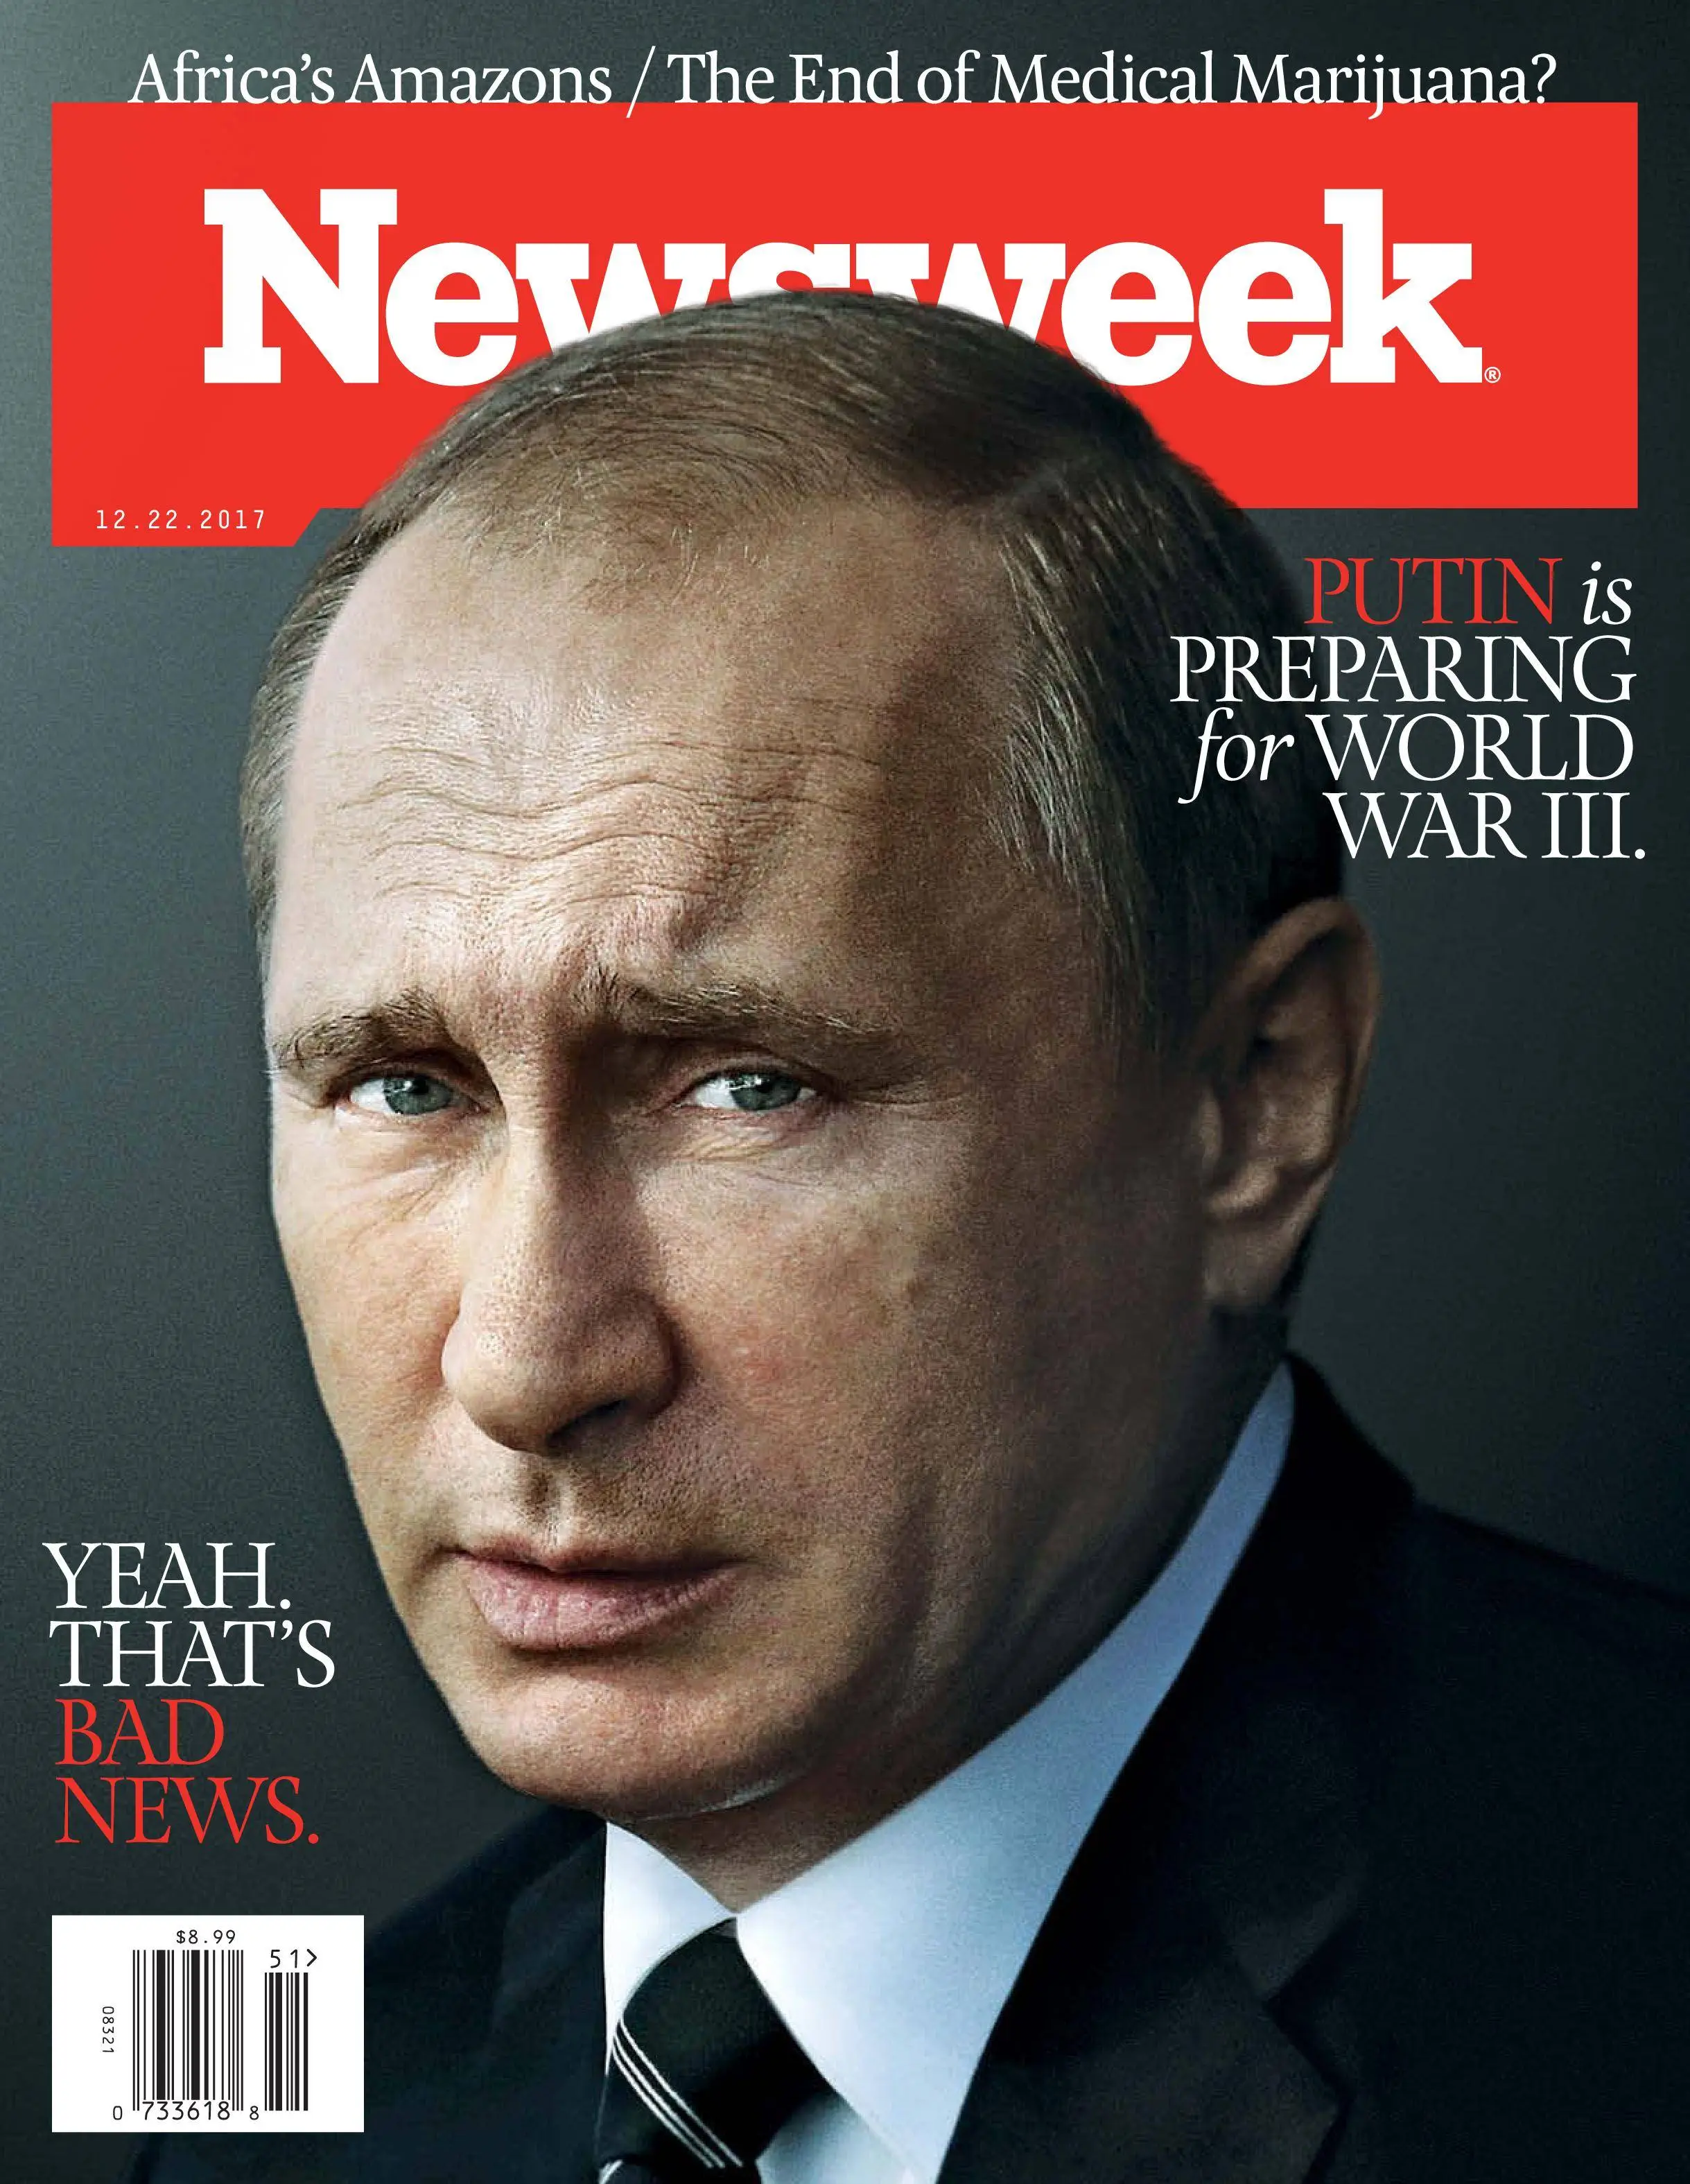 Обложка нового журнала. Ньюсвик обложка журнала с Путиным. Обложка для журнала.